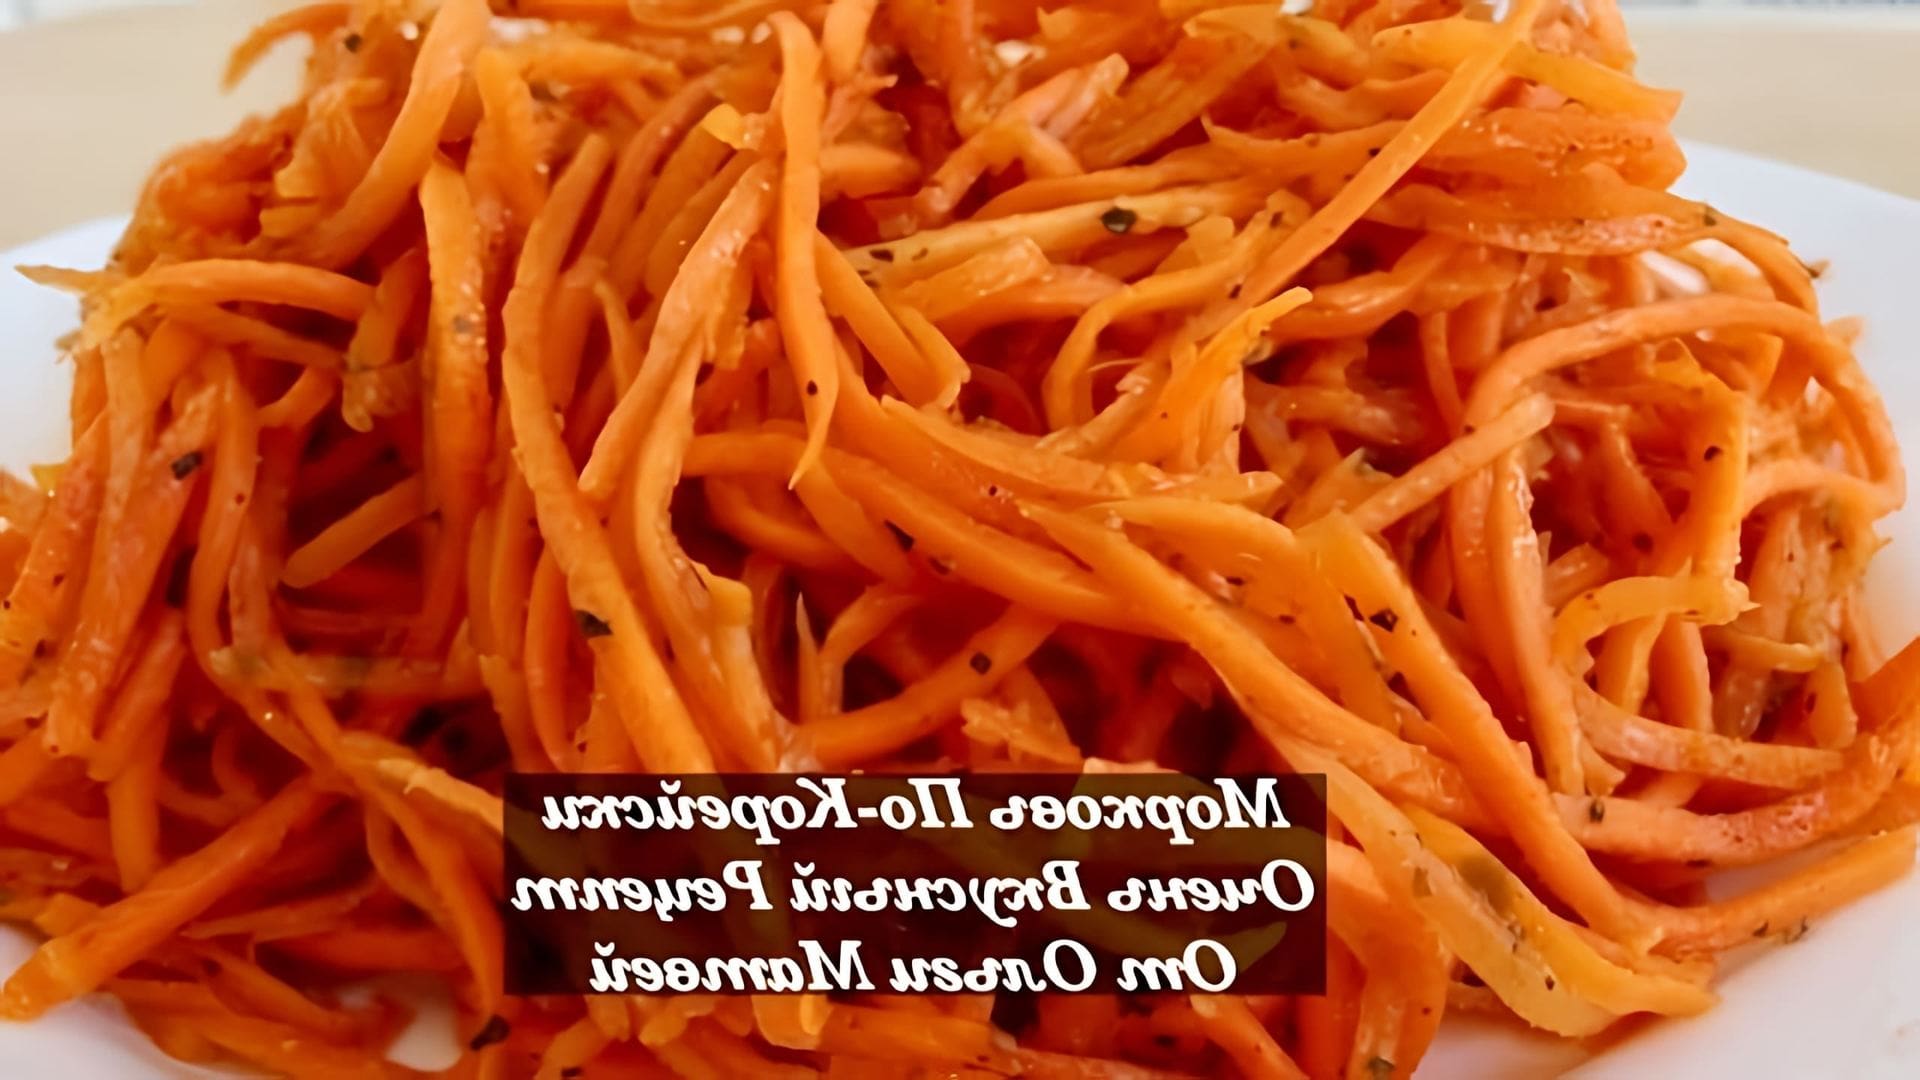 В этом видео демонстрируется рецепт приготовления моркови по-корейски